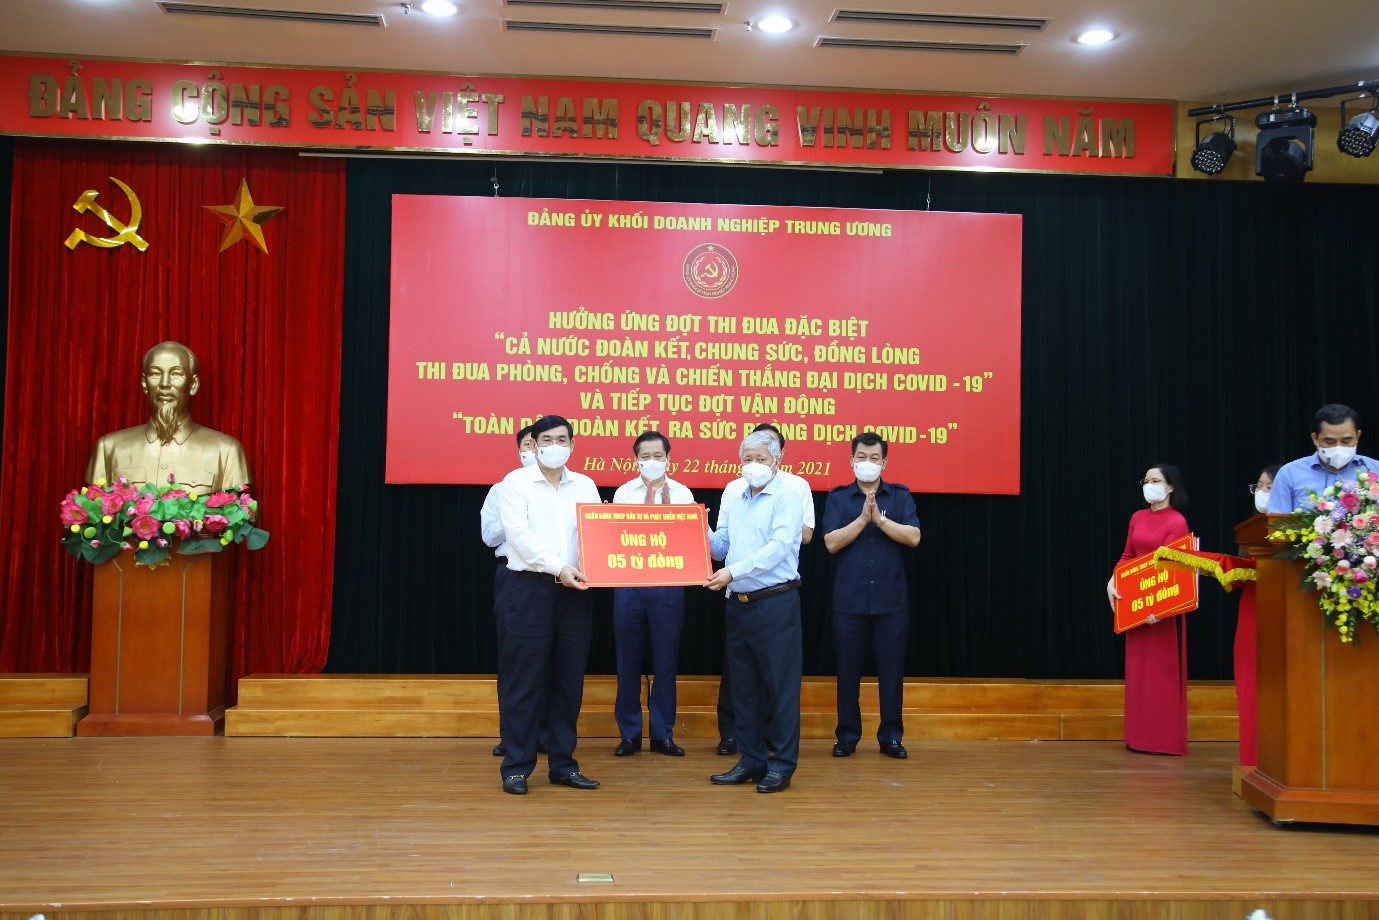 Ngân hàng TMCP Đầu tư và Phát triển Việt Nam trao ủng hộ công tác phòng chống dịch Covid-19 do Đảng ủy Khối Doanh nghiệp Trung ương phát động.